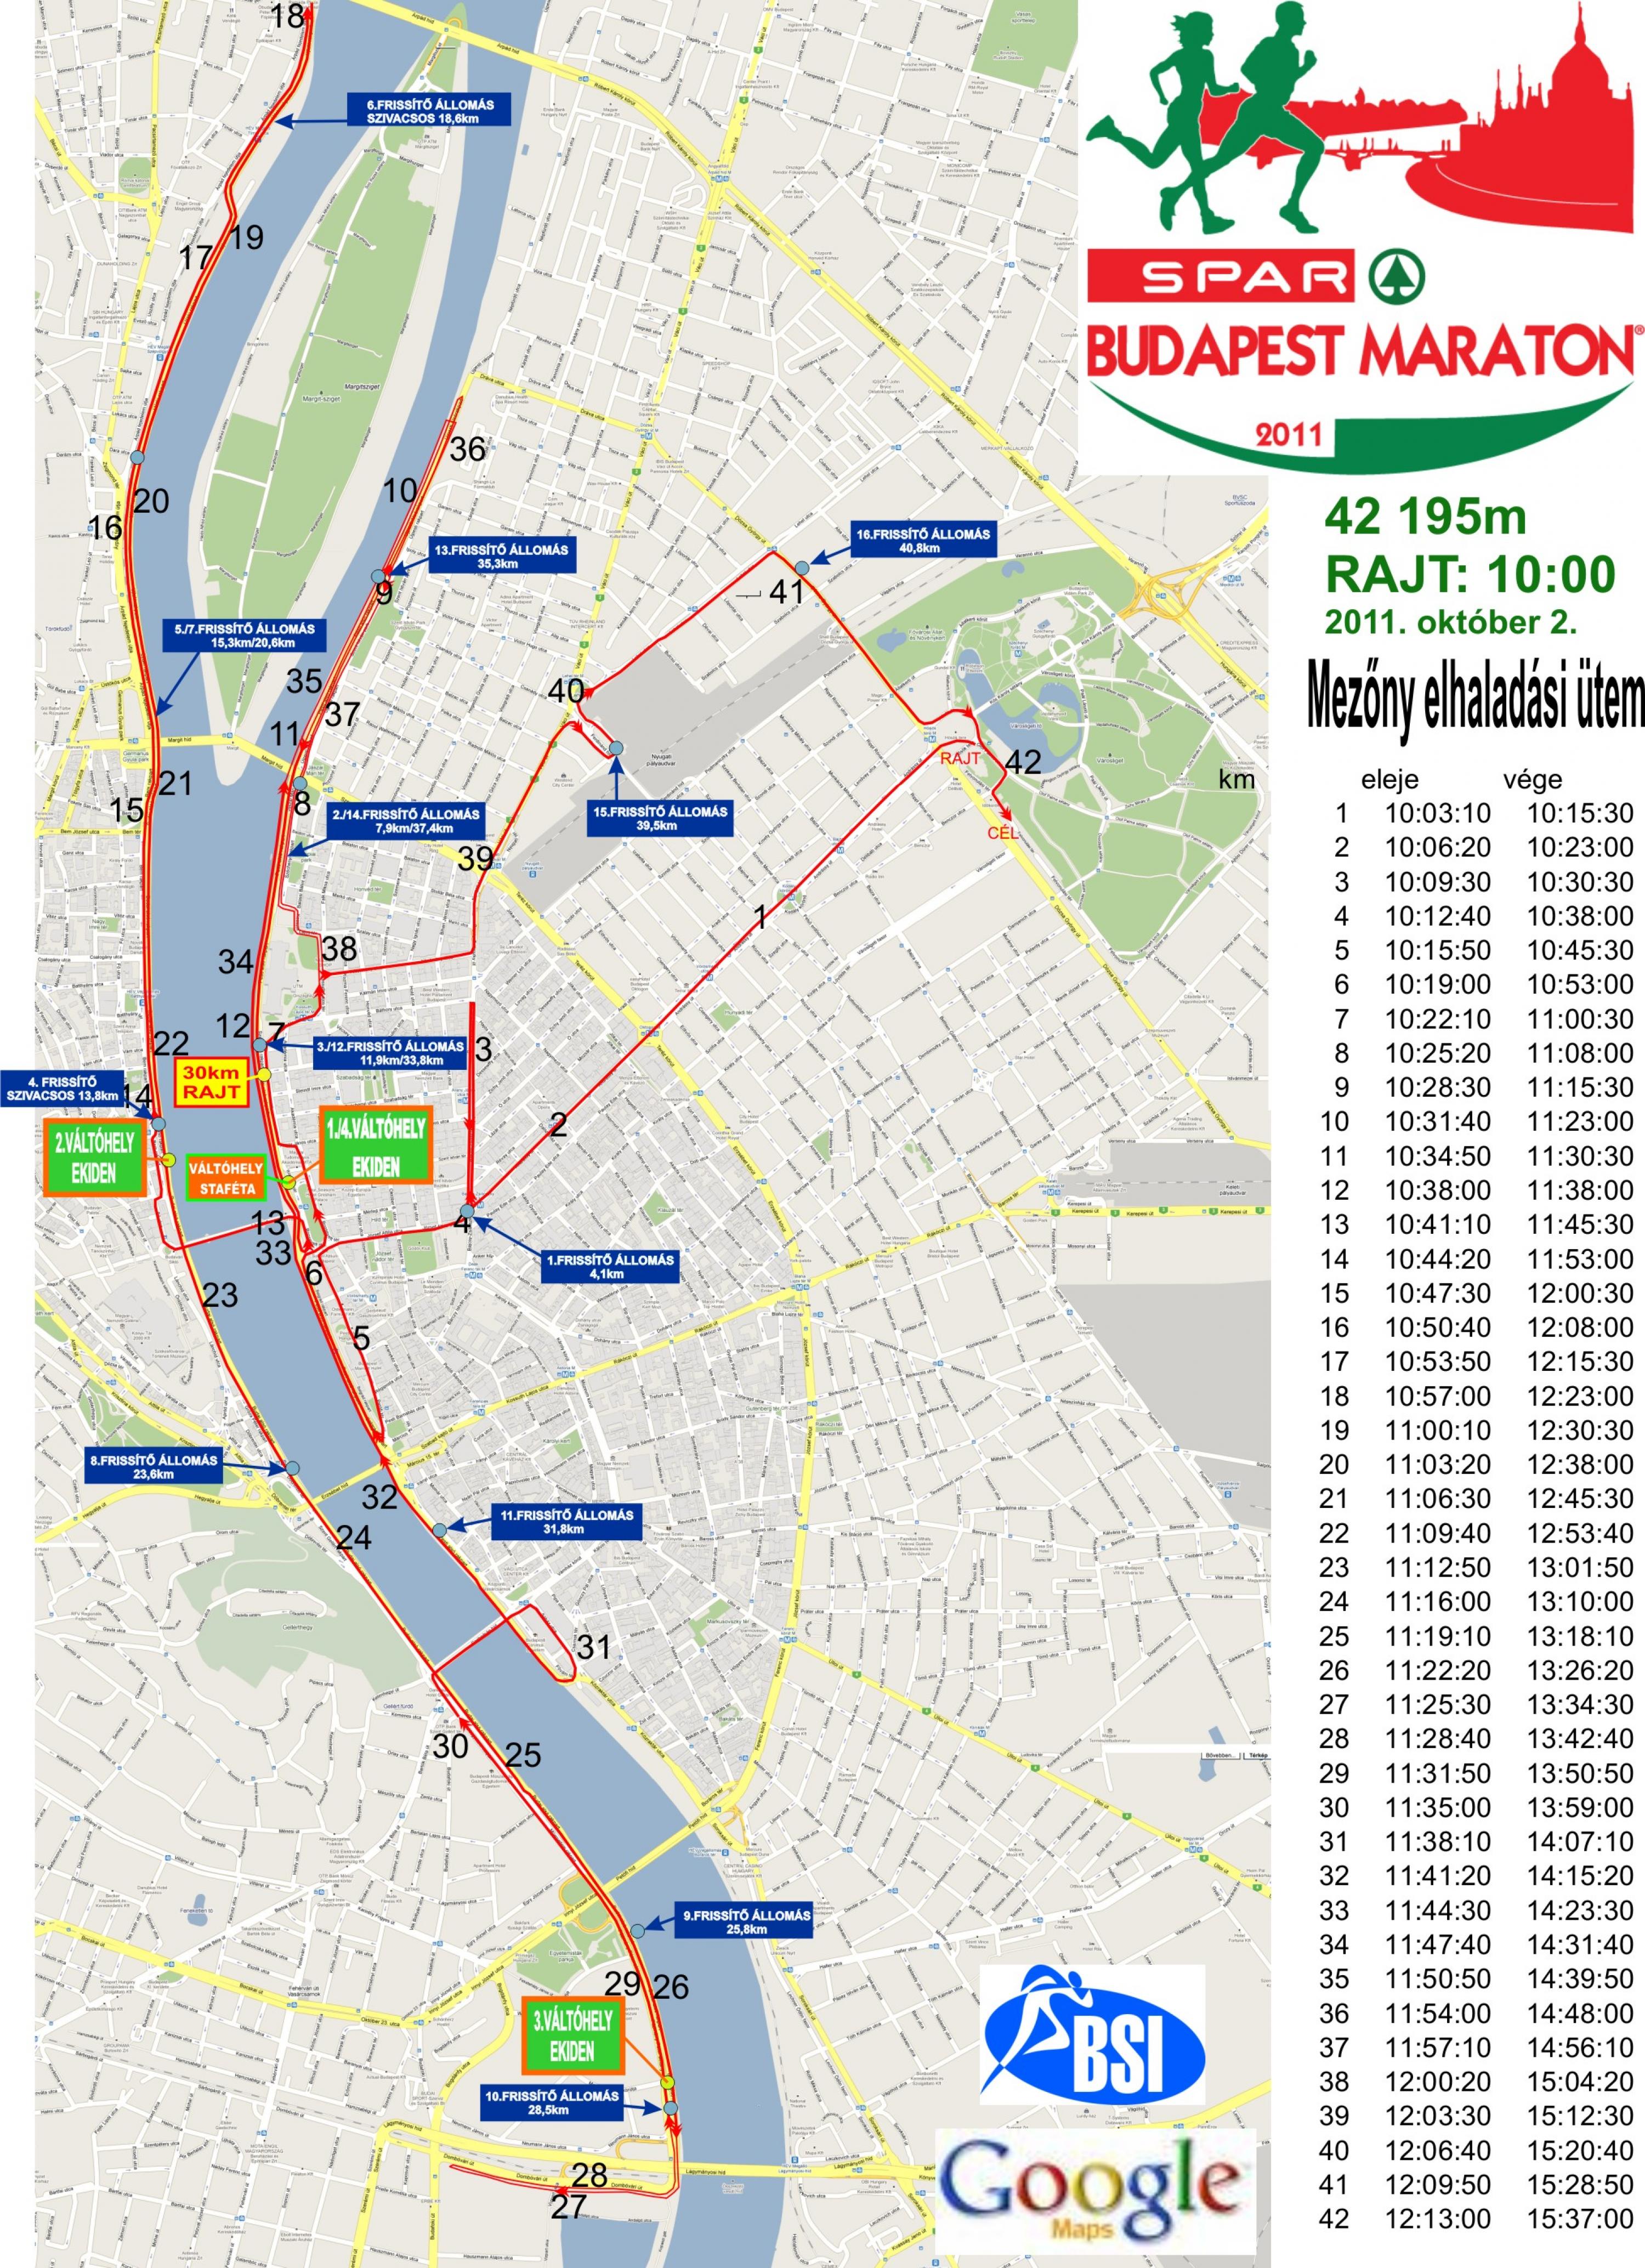 budapest útvonal térkép 27. Spar Budapest Maraton 30 km   térkép   Futanet.hu budapest útvonal térkép